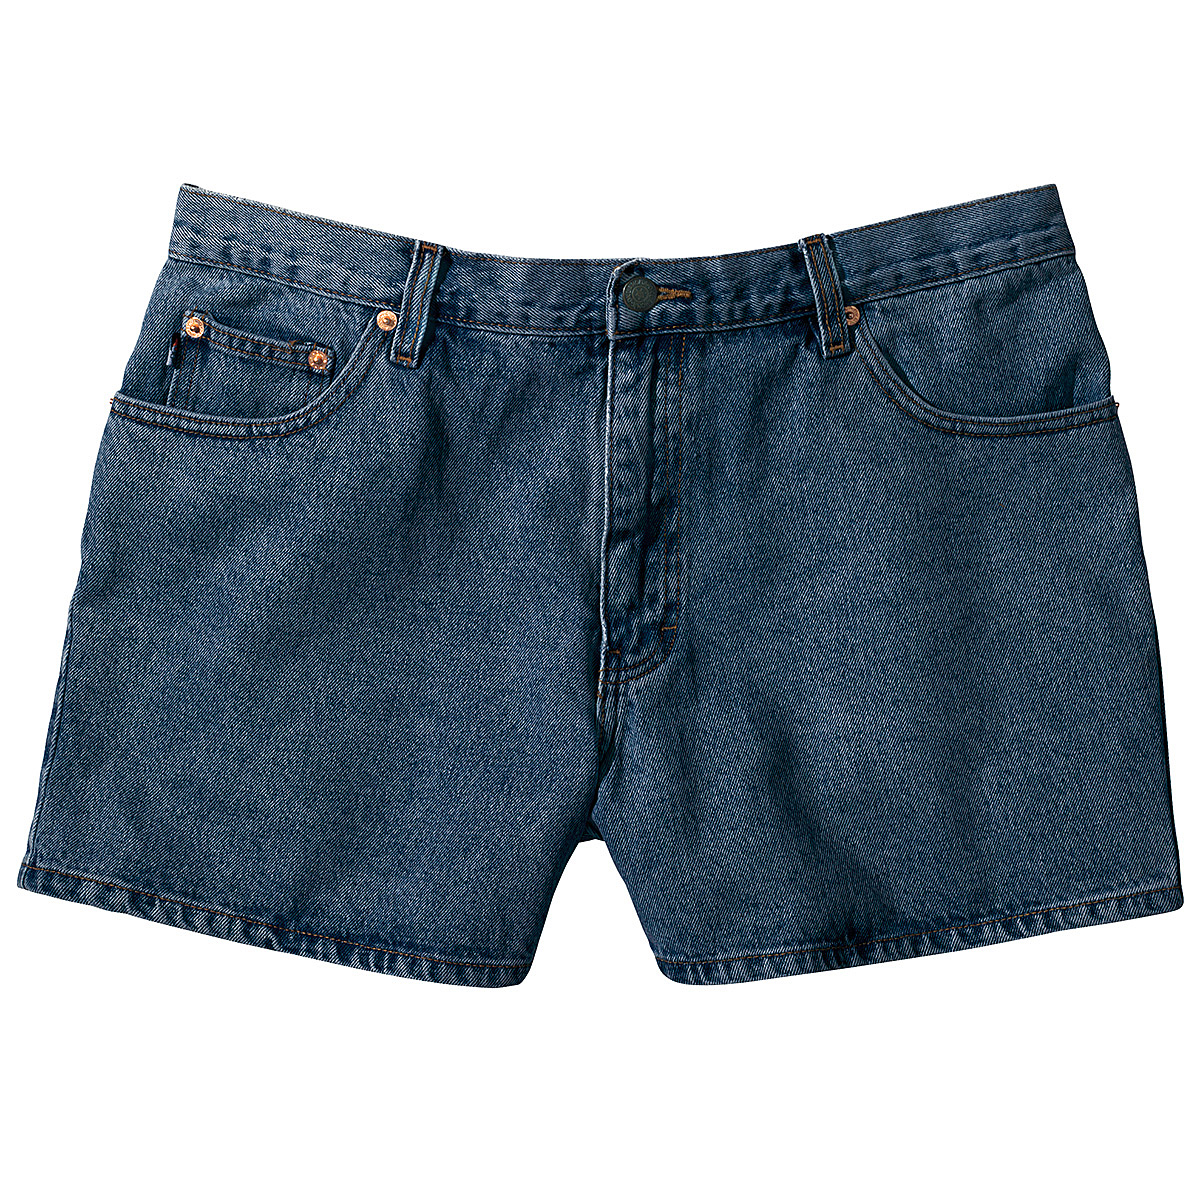 Women High Waist Ripped Frayed Denim Shorts Summer Casual Short Jeans Hot  Pants